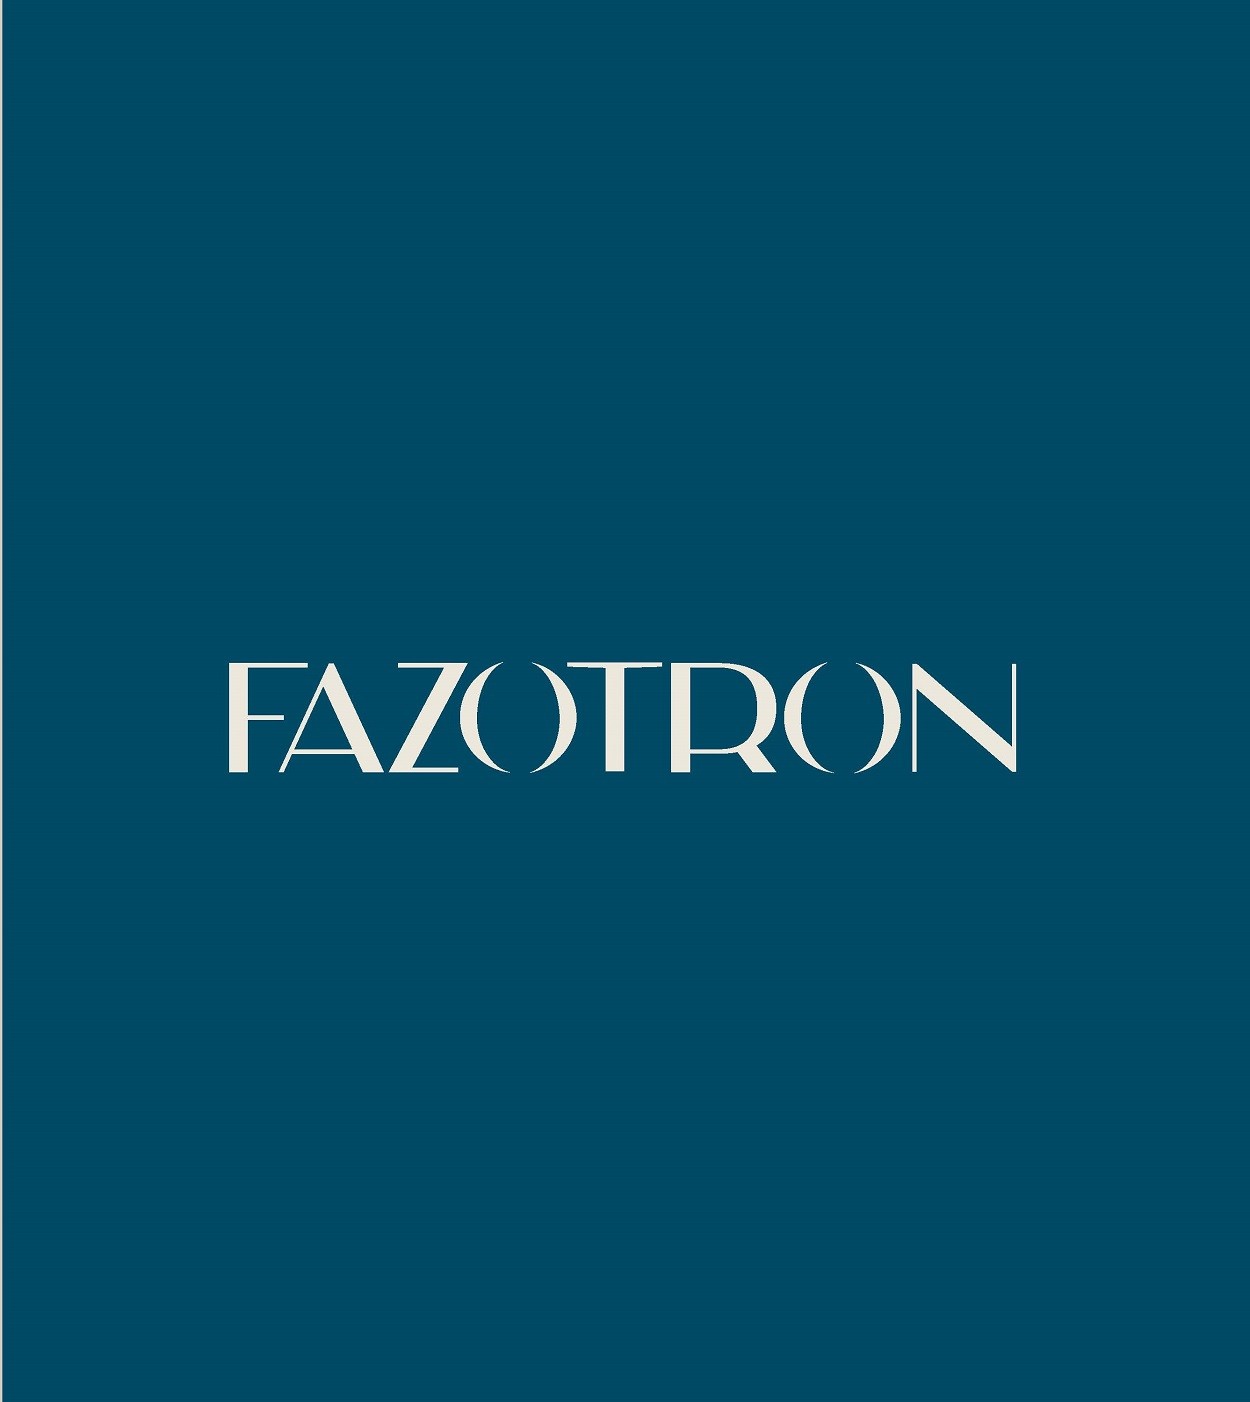 Фото №5: Fazotron - Разработка логотипа и создание бренда в студии брендинга Lobster Agency